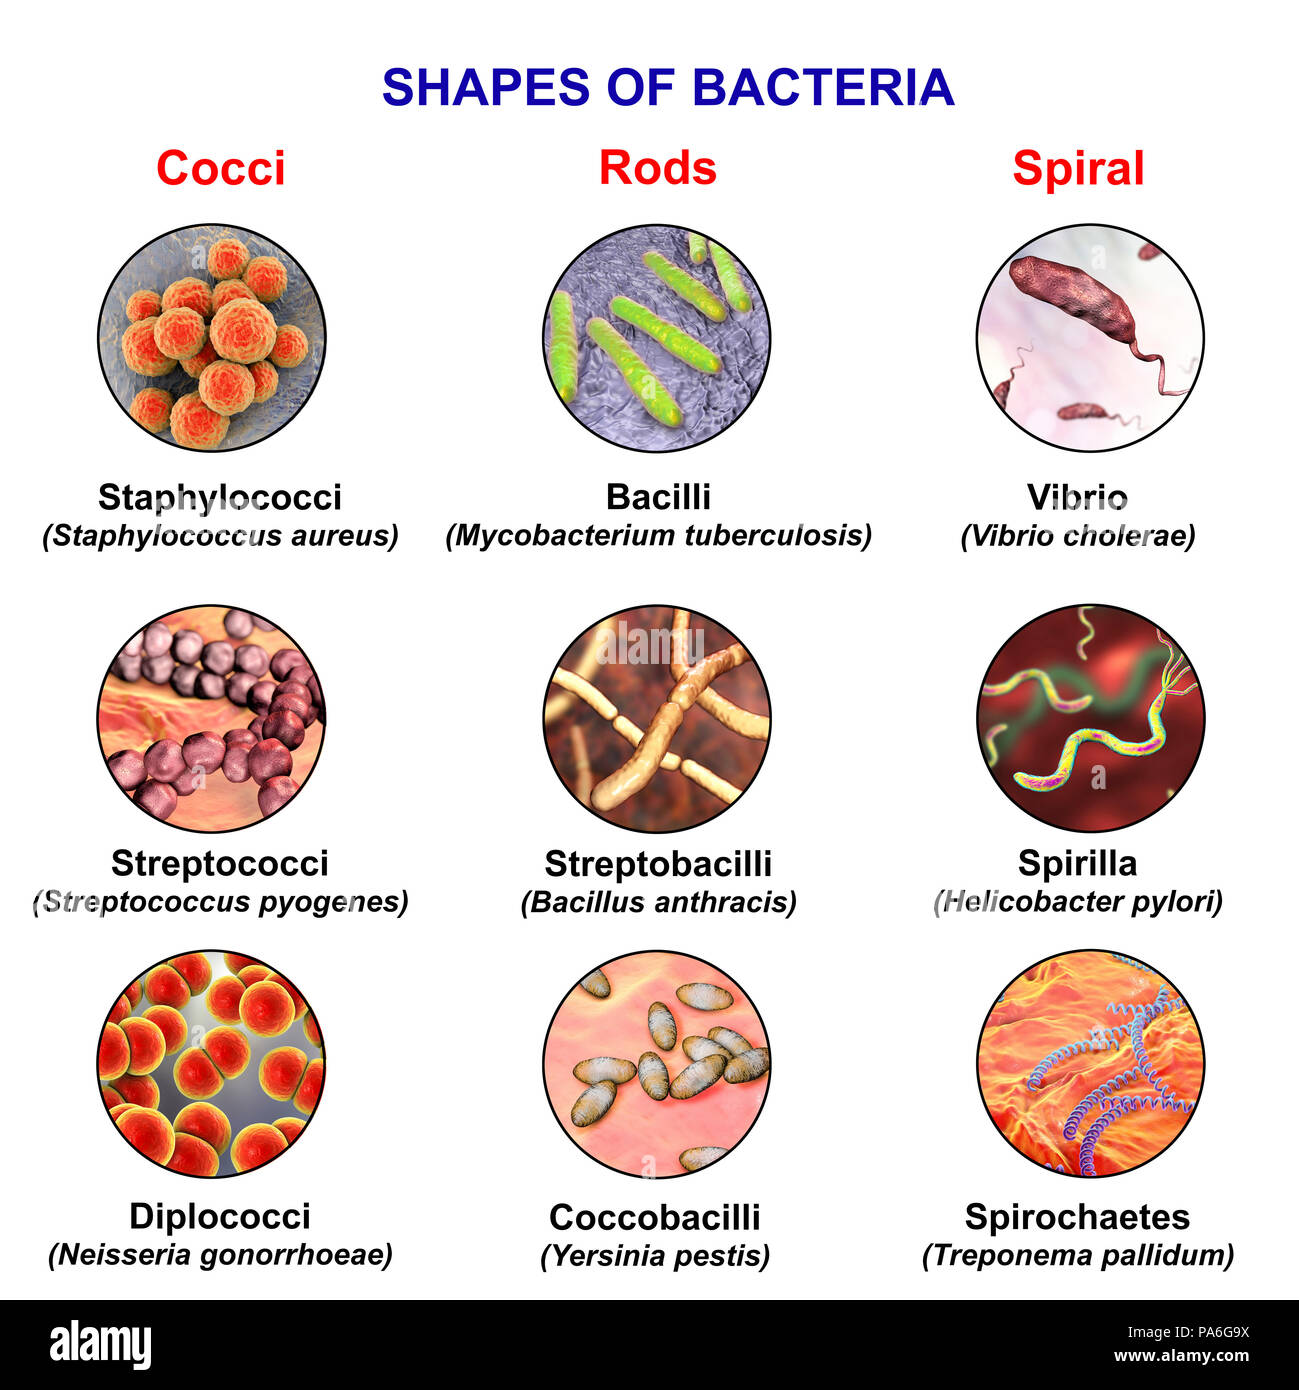 Las bacterias de diferentes formas, equipo ilustración mostrando tres formas  principales de bacterias - esférico (cocos), por ejemplo, el Staphylococcus  aureus; rod-como, por ejemplo, Mycobacterium tuberculosis; y en espiral,  por ejemplo, Campylobacter